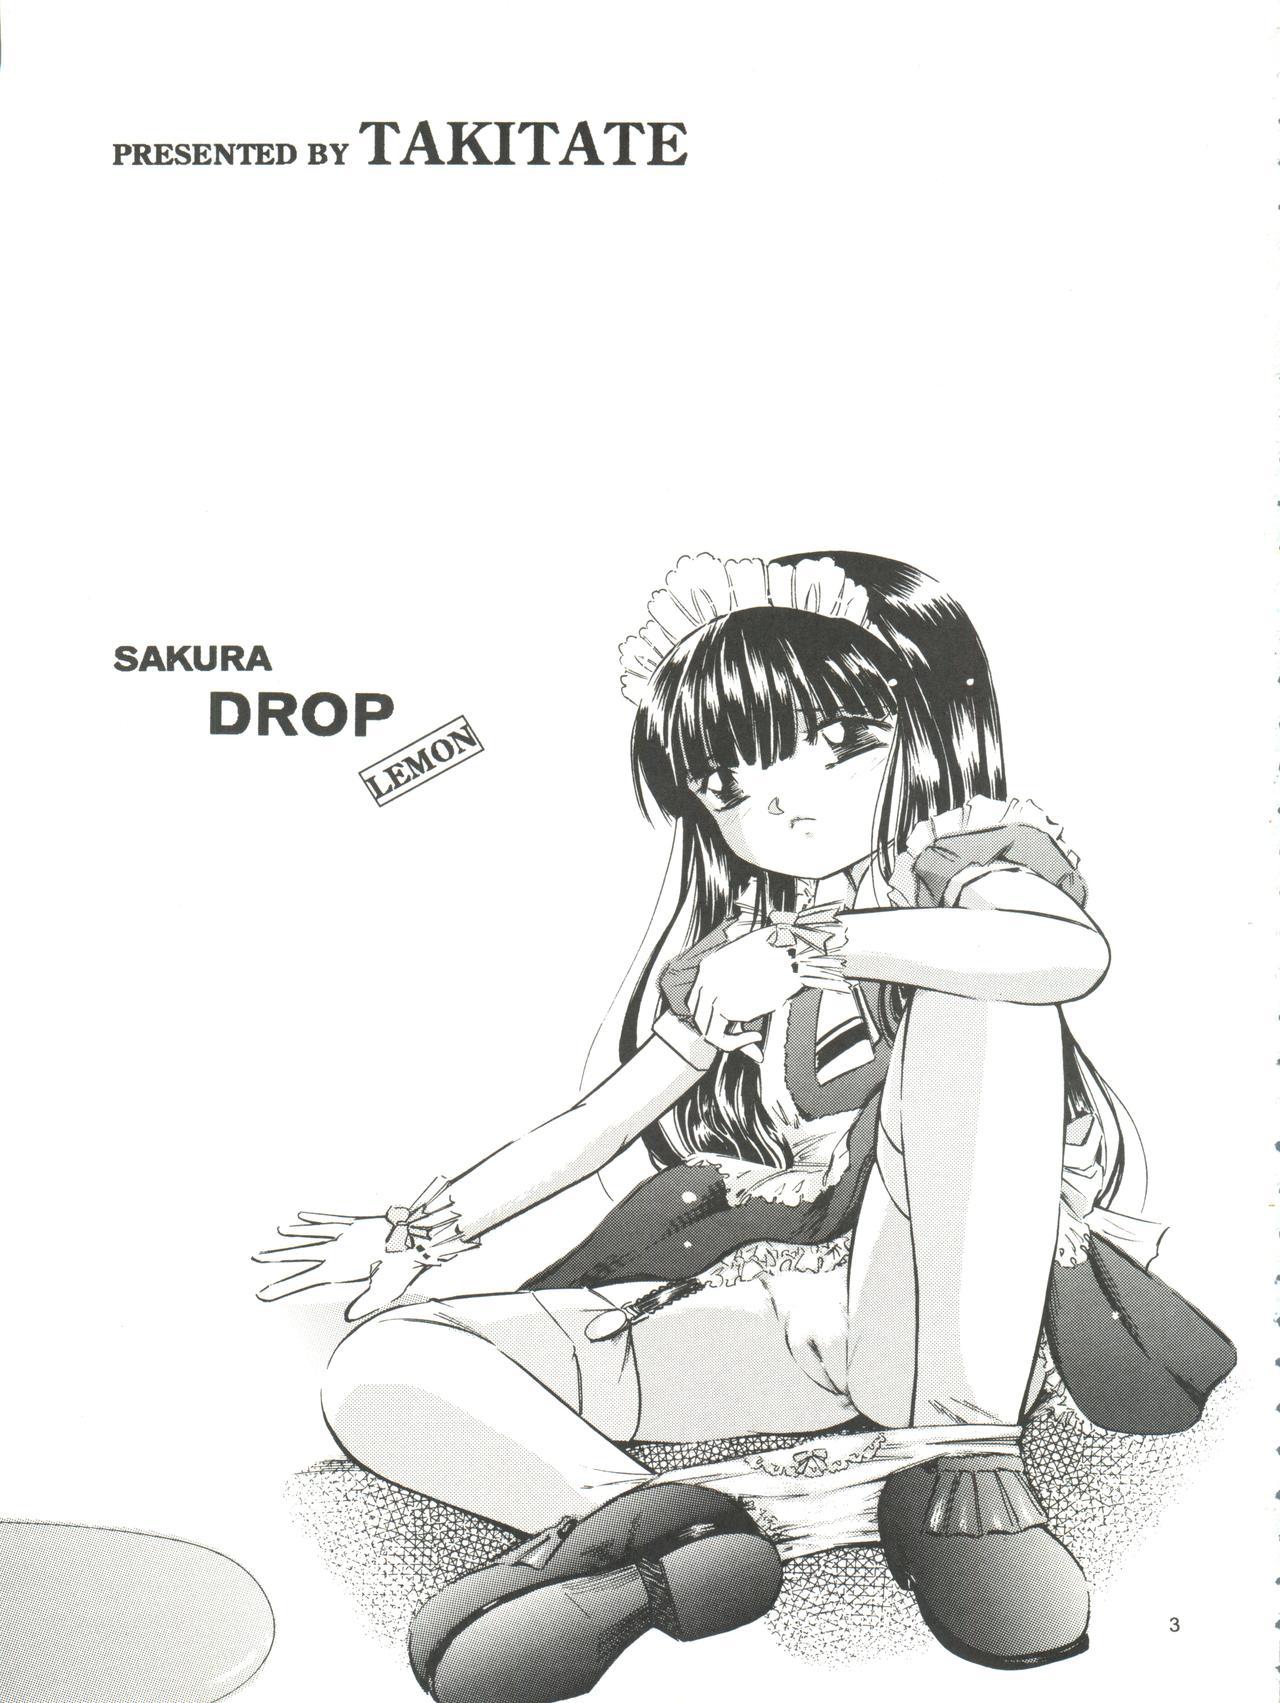 Affair Sakura Drop 3 Lemon - Cardcaptor sakura Free Fucking - Page 3